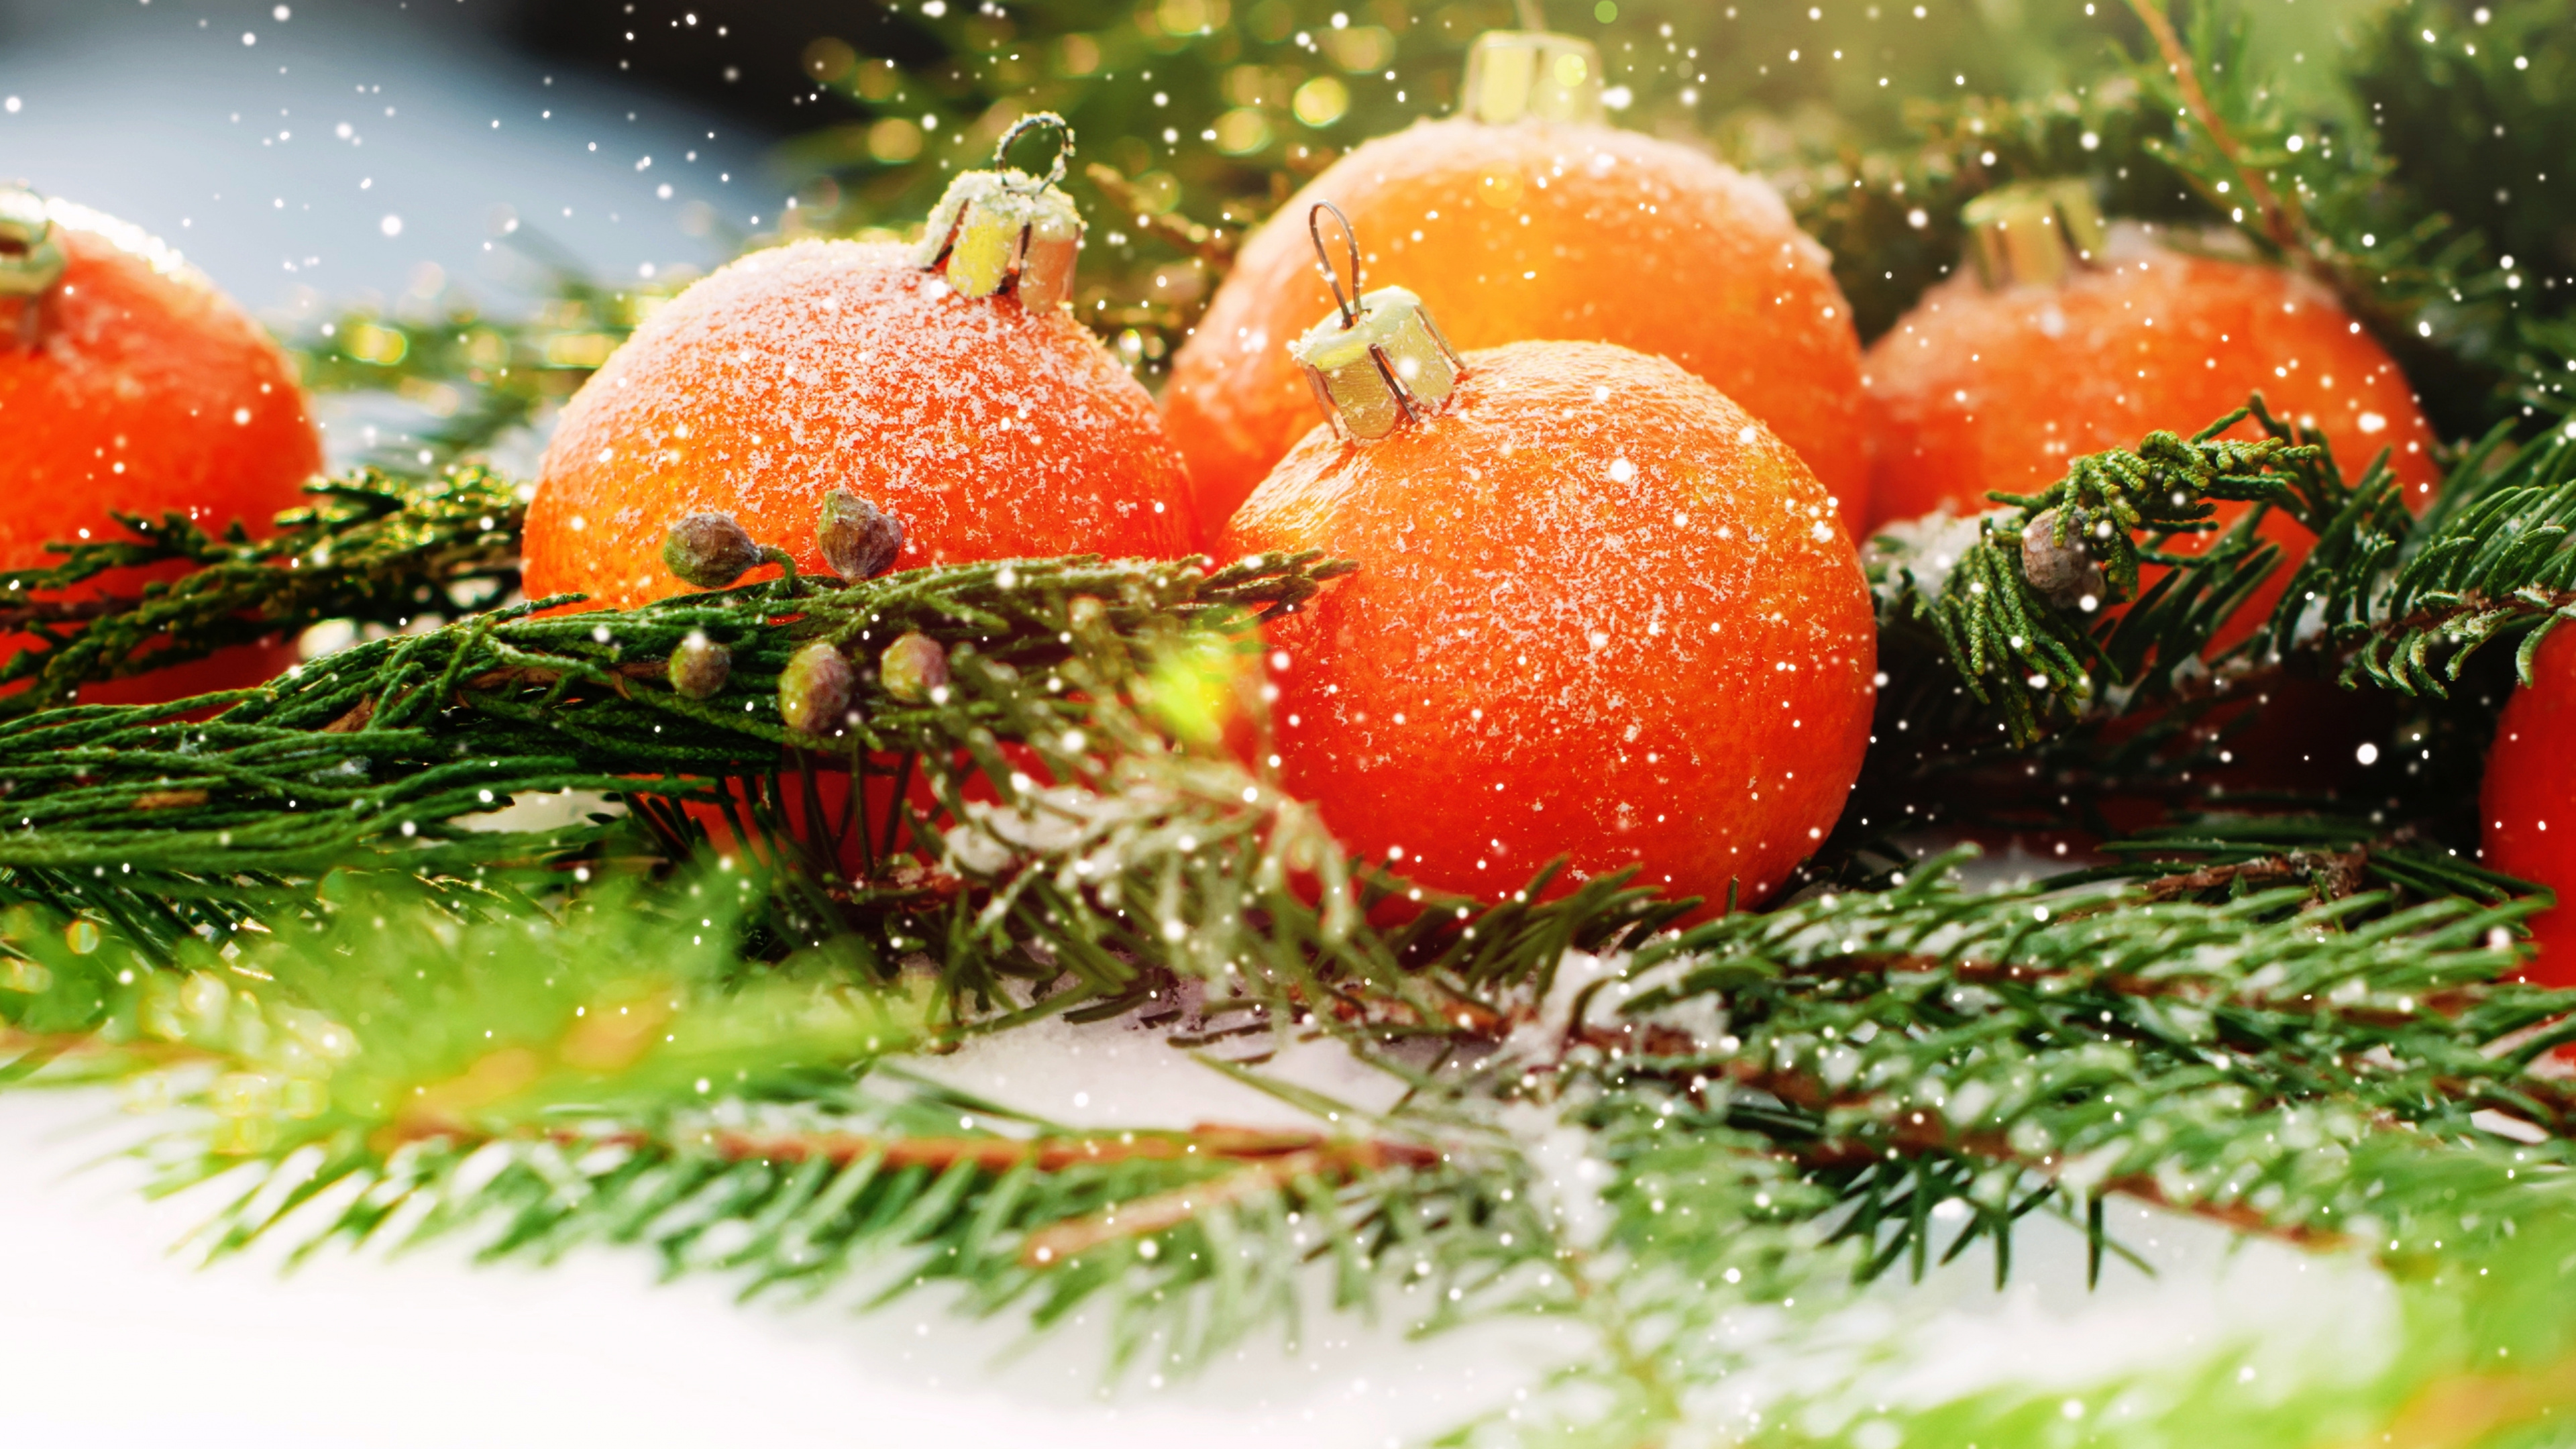 Weihnachten, Neujahr, Vegetarisches Essen, Lebensmittel, Natürliche Lebensmittel. Wallpaper in 3840x2160 Resolution